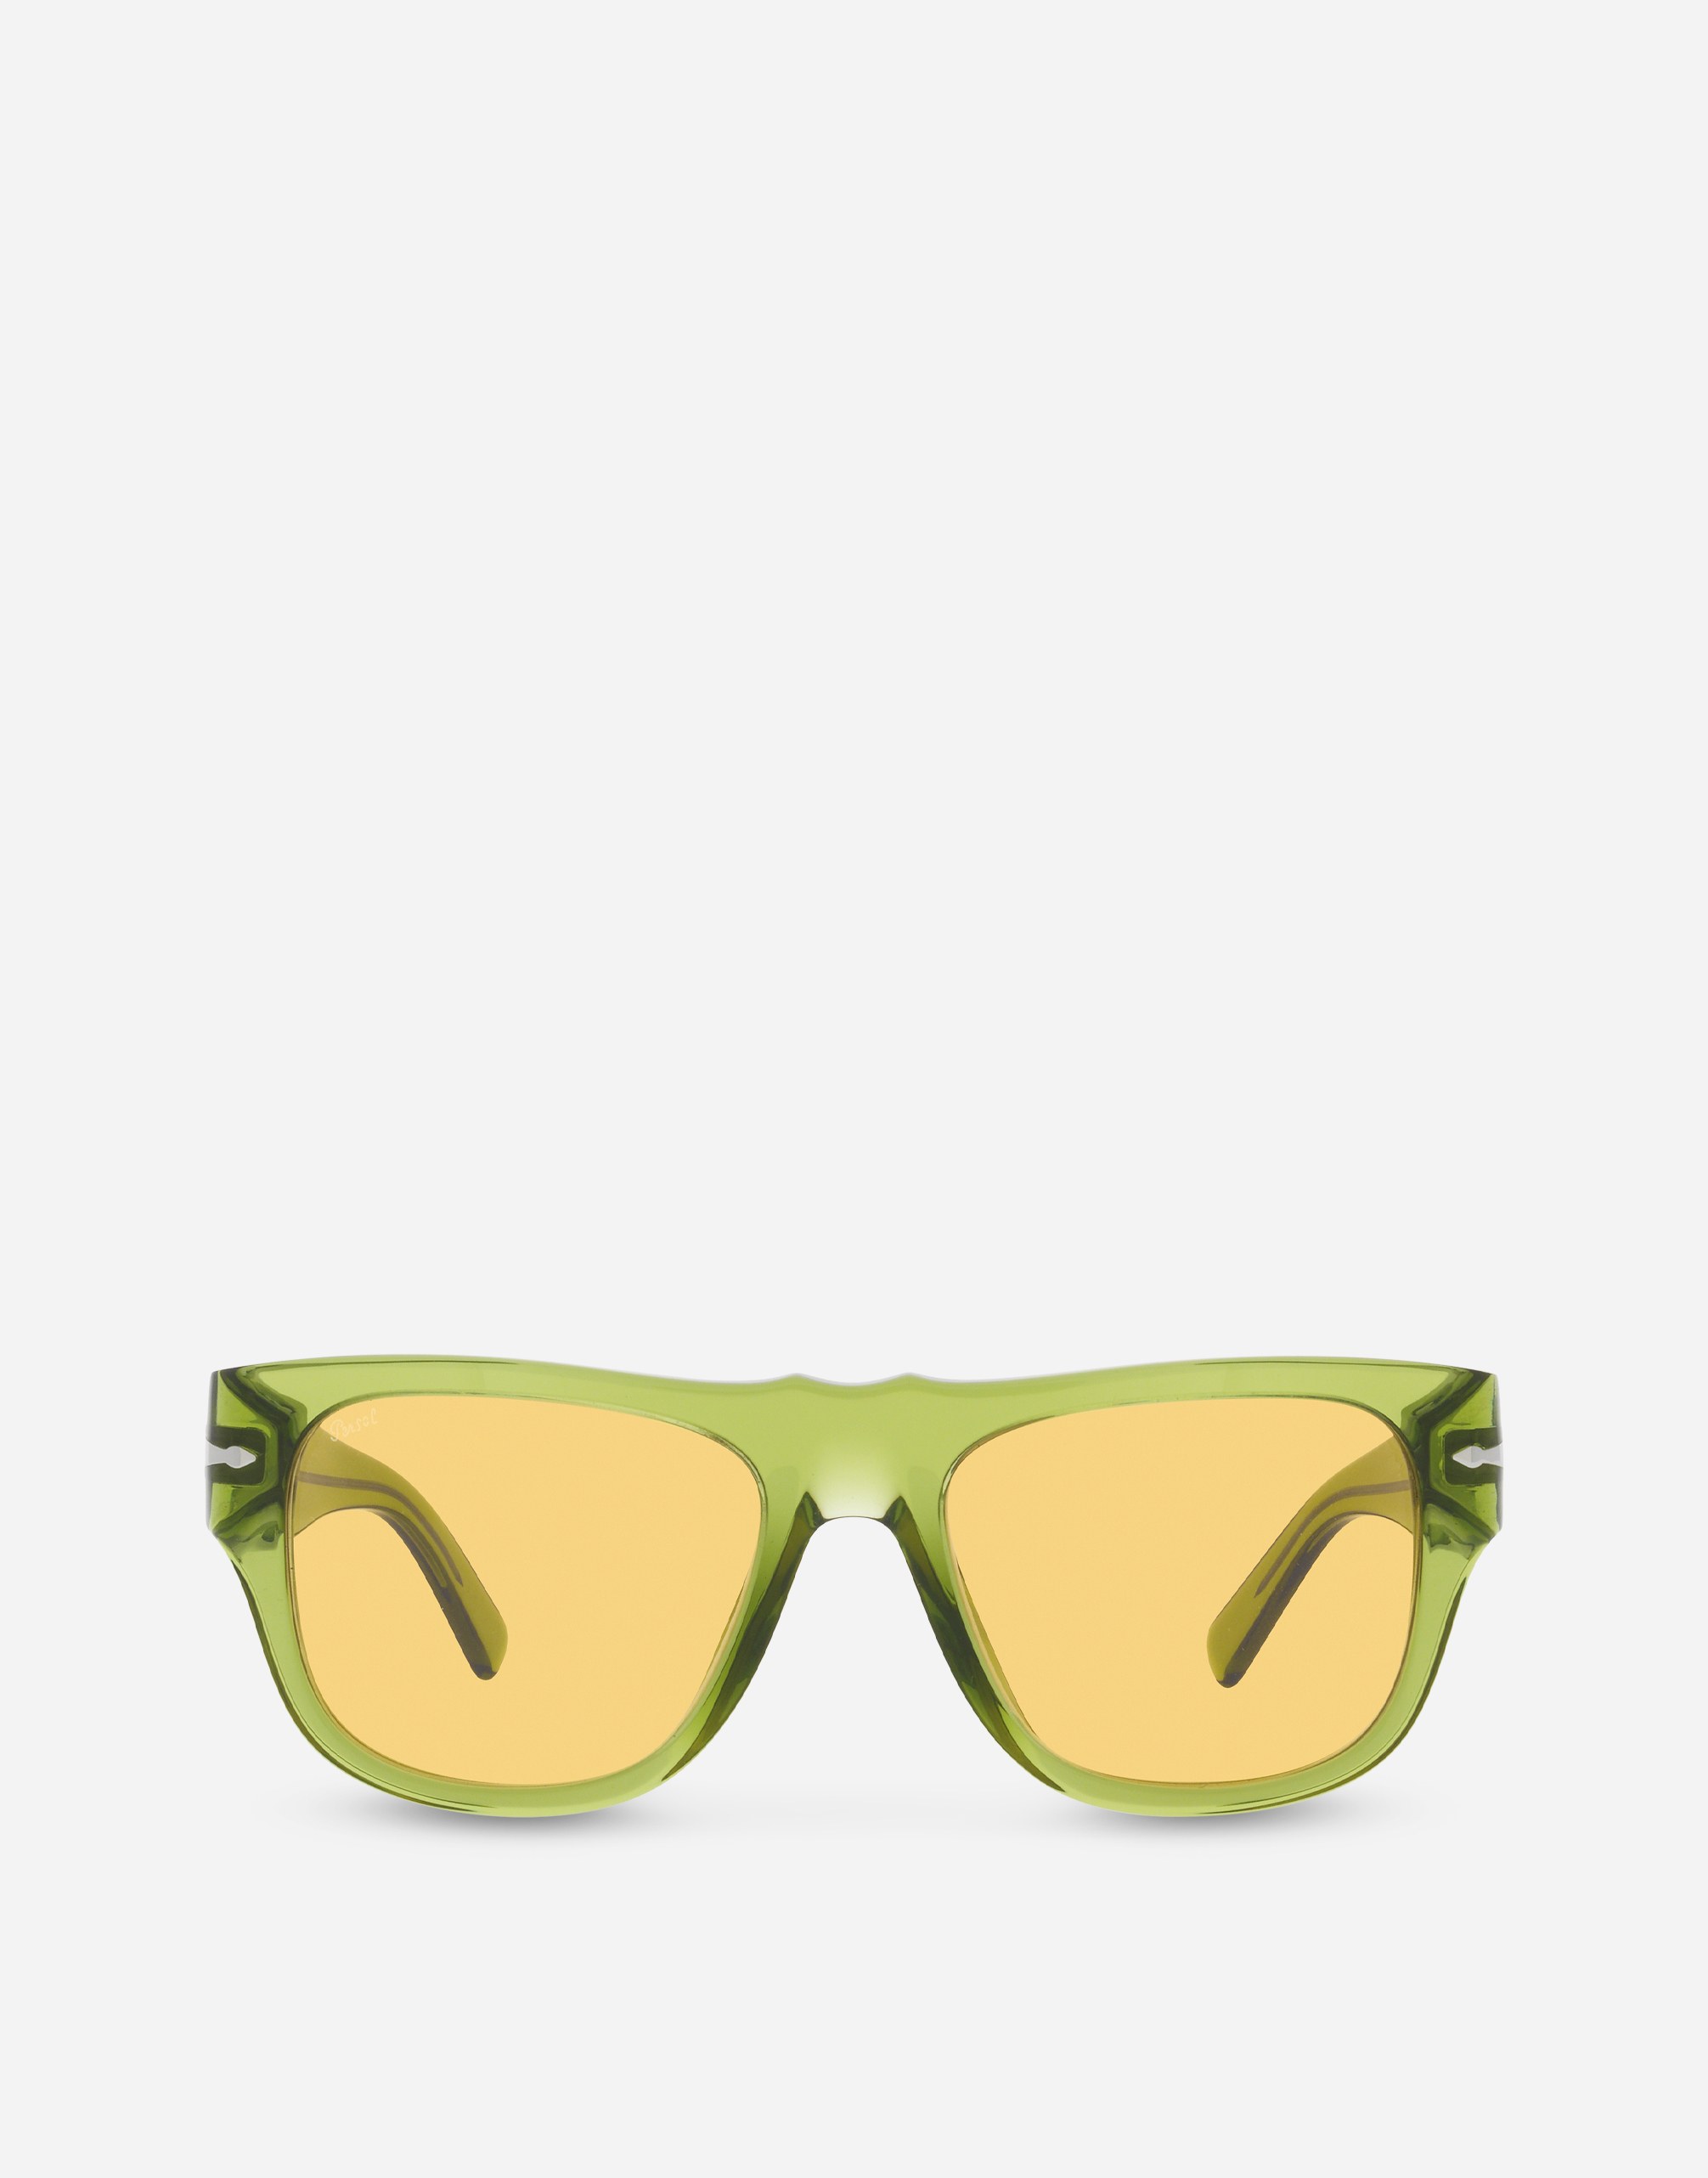 Dolce&Gabbana x Persol sunglasses in transparent green